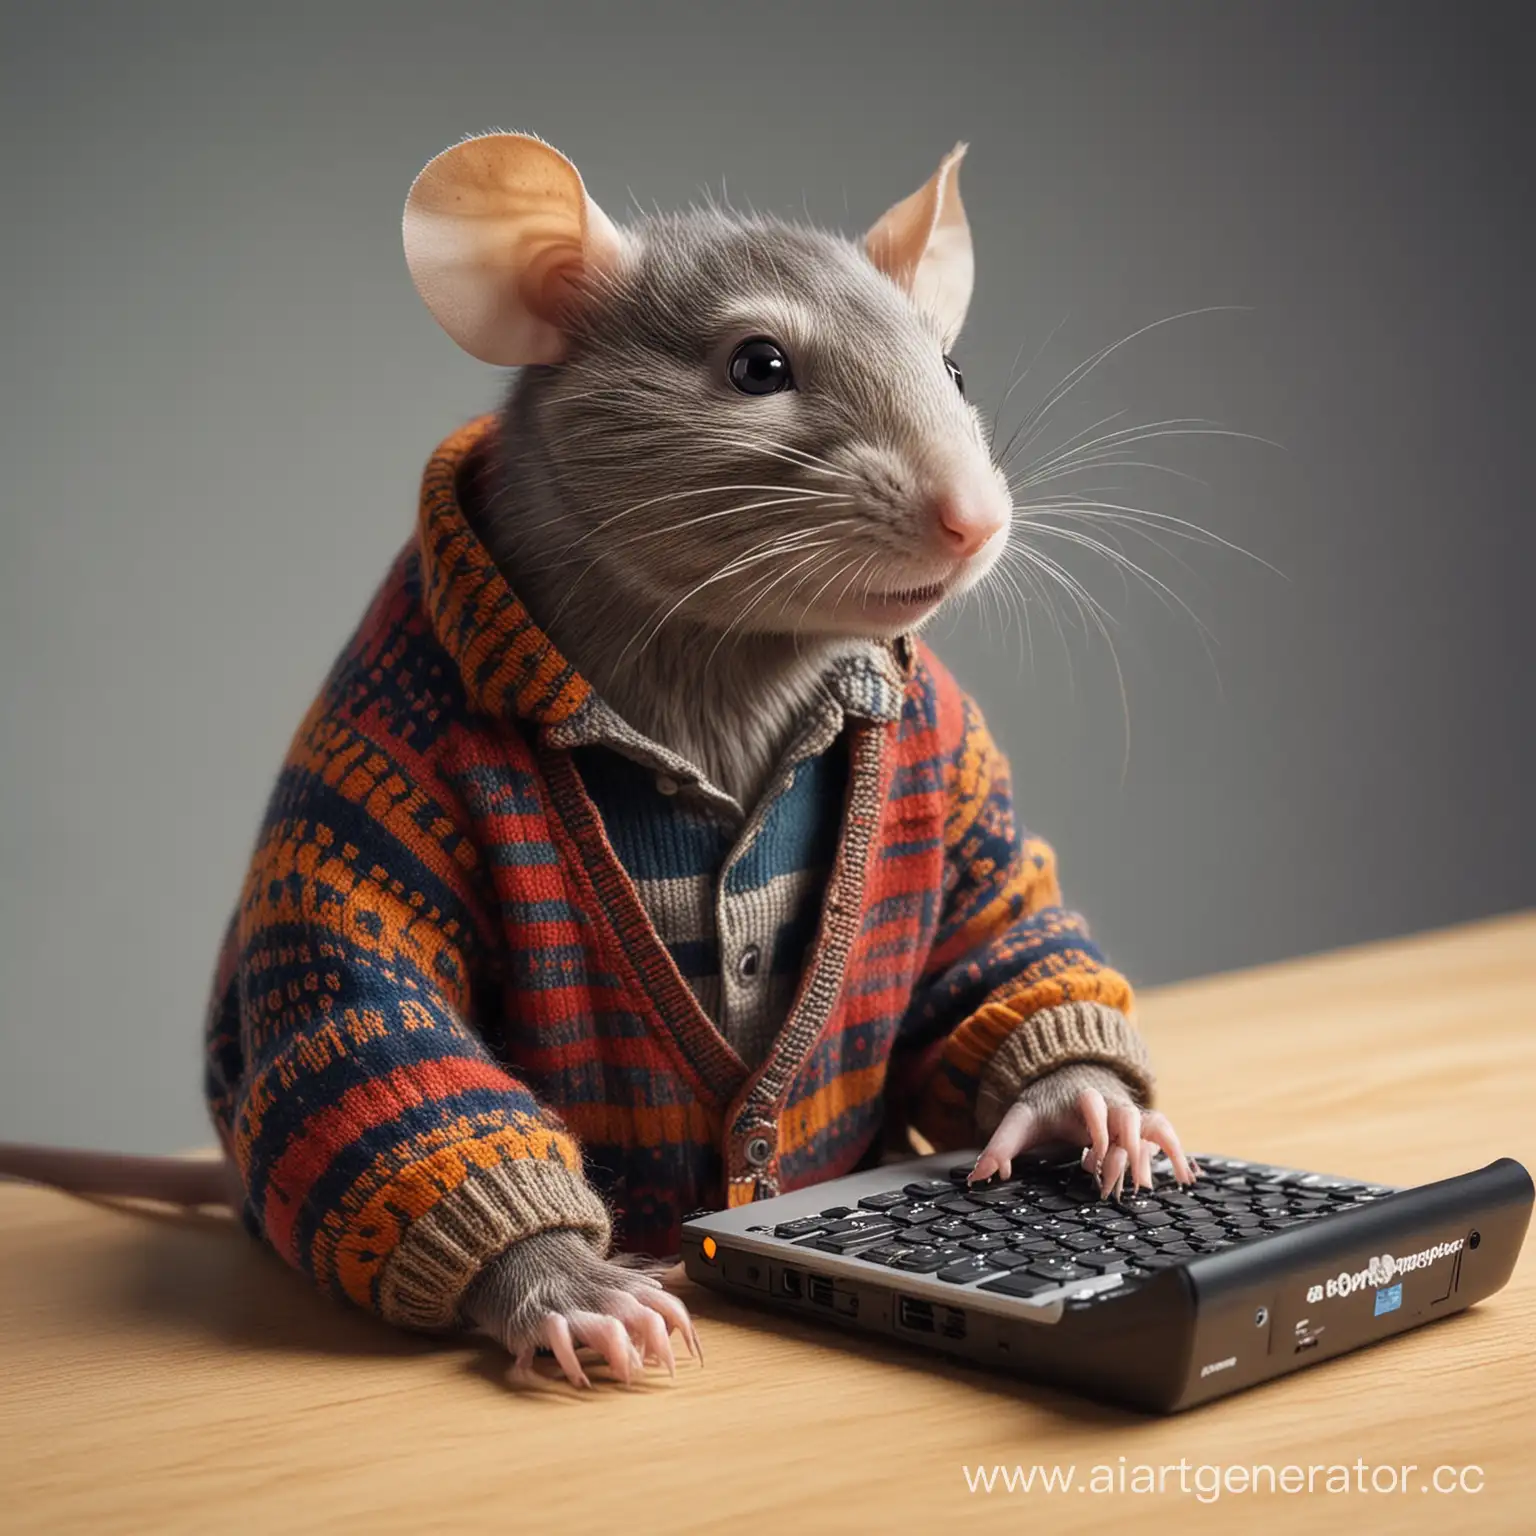 Engineer-Rat-Programming-AutoResponder-Robot-in-Sweater